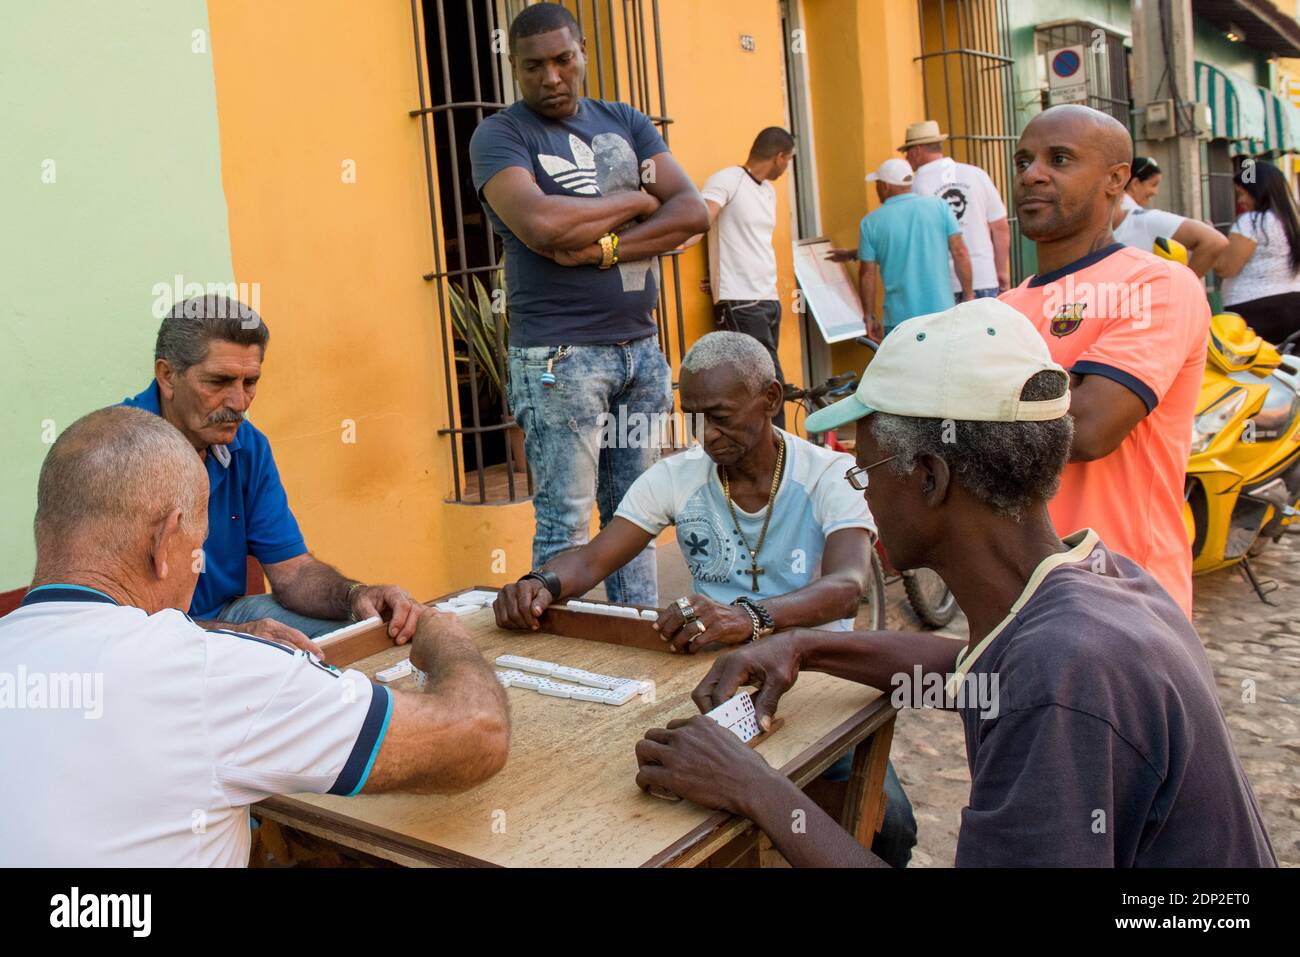 Homme jouant des dominos dans la rue, Trinidad, Cuba Banque D'Images